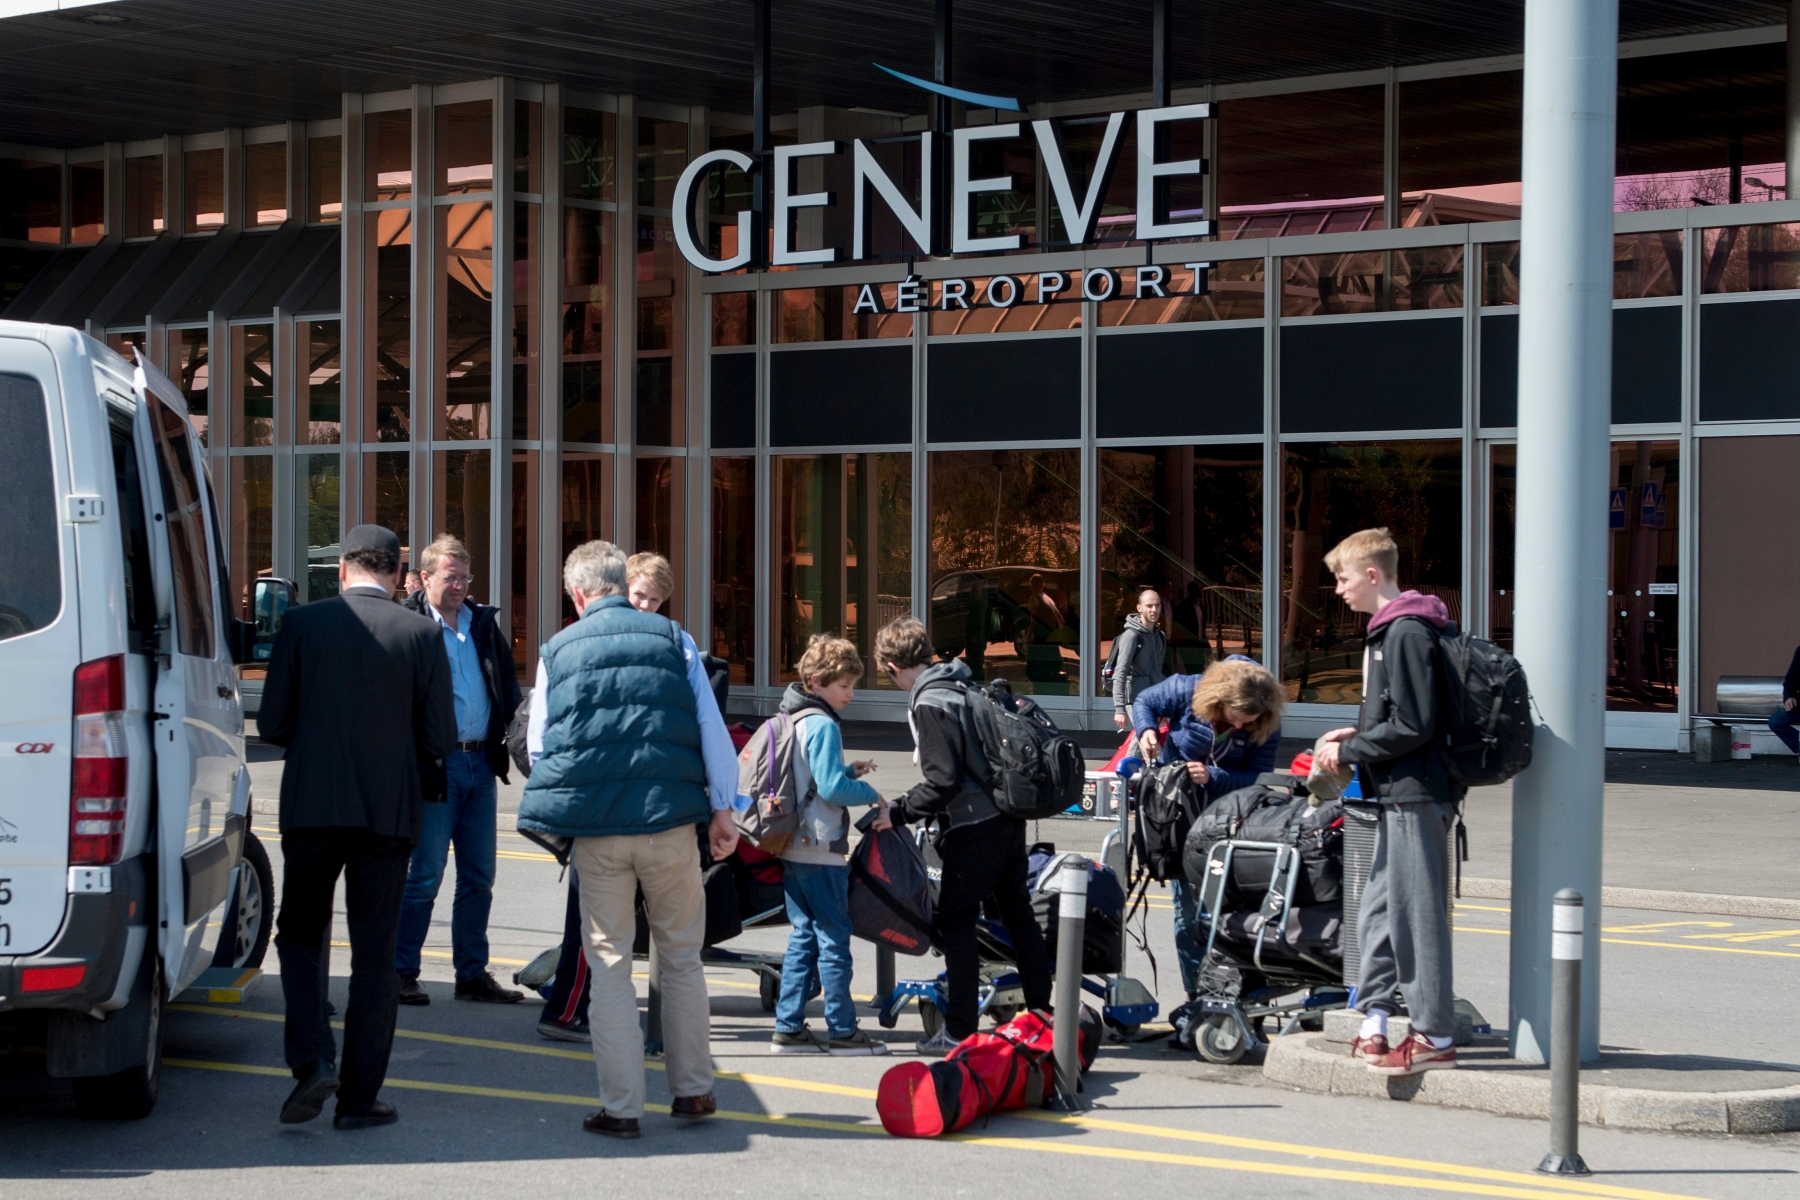 Des passagers arrivent devant le terminal 1 de Geneve Aeroport, avant une conference de presse de presentation du rapport annuel et le bilan financier 2015 de Geneve Aeroport, ce mercredi 6 avril 2016 a Geneve. (KEYSTONE/Martial Trezzini) SUISSE AEROPORT GENEVE RAPPORT 2015